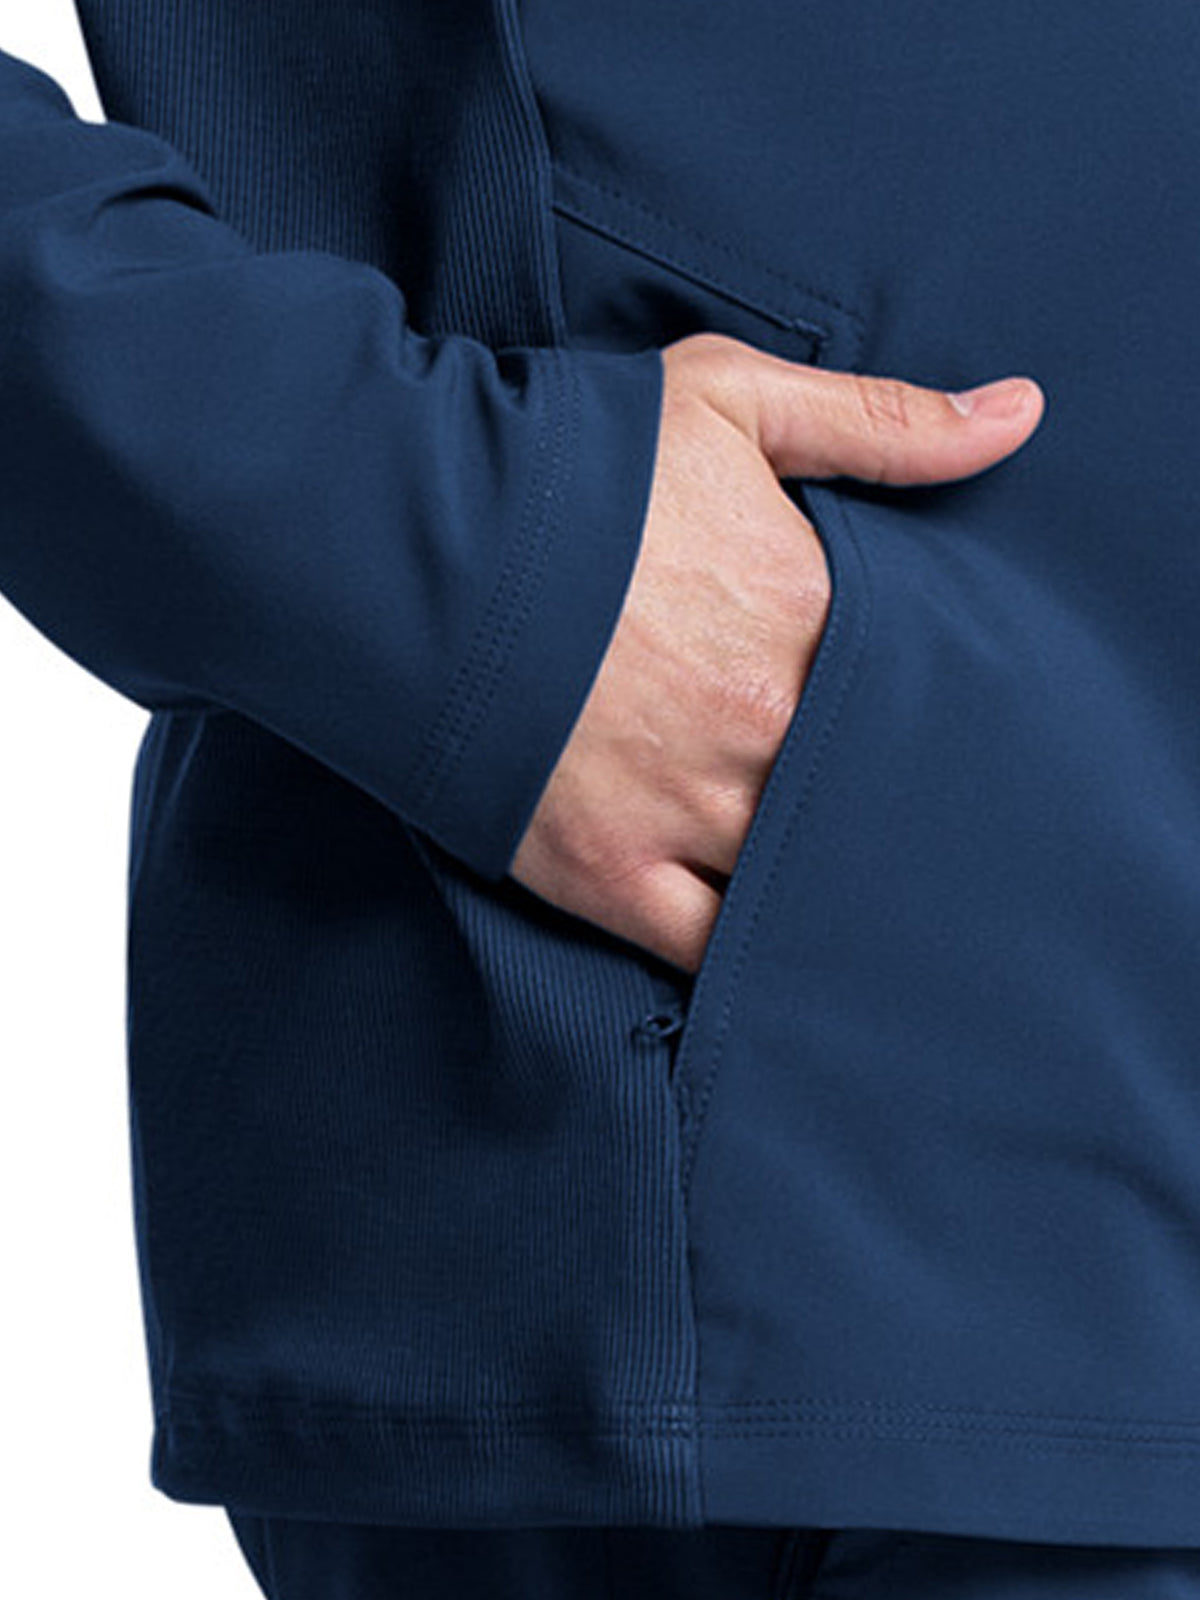 Men's Stand-up Collar Zip Front Jacket